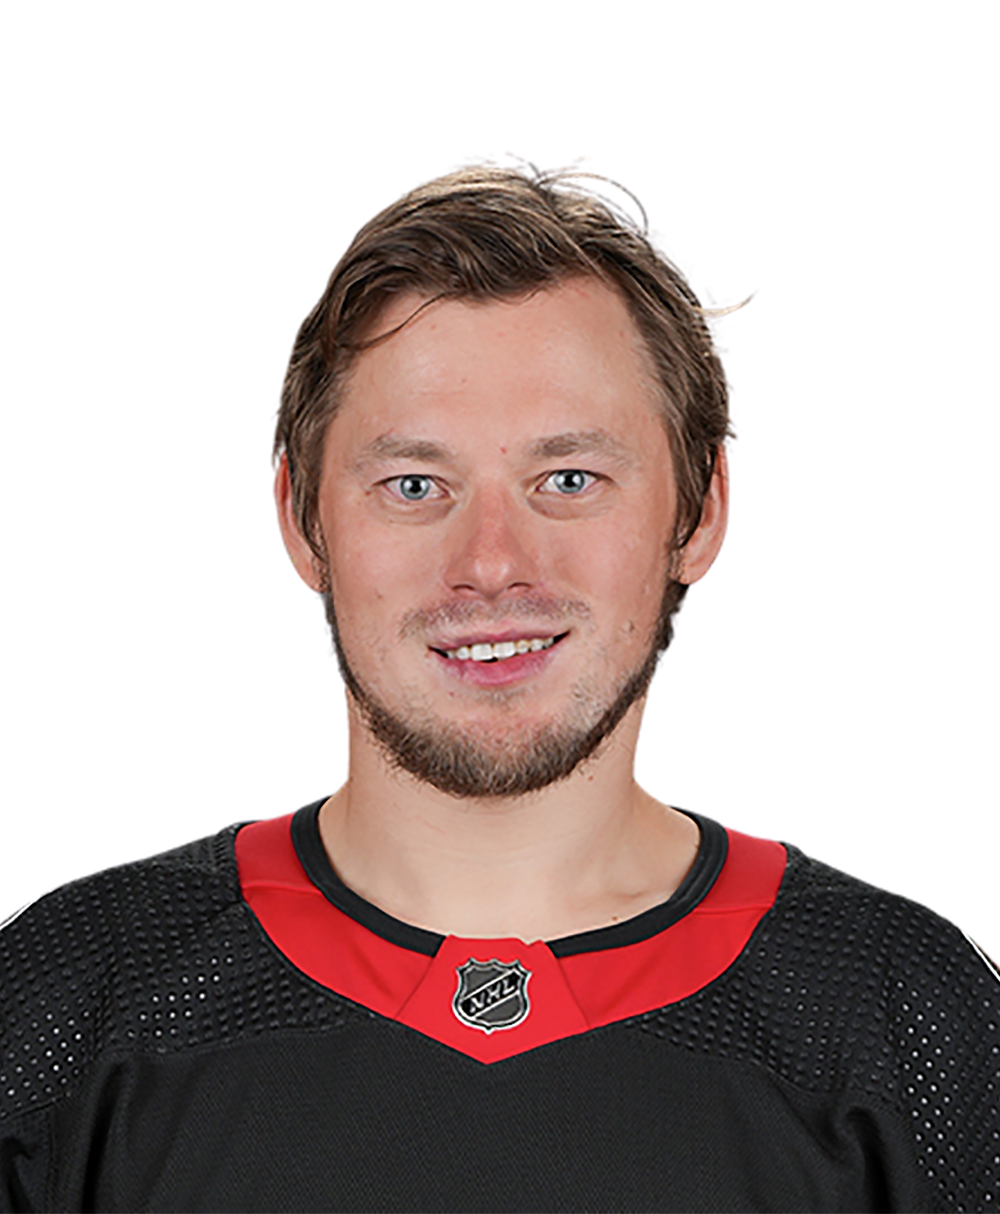 Vladimir Tarasenko Ottawa hockey player signature text shirt